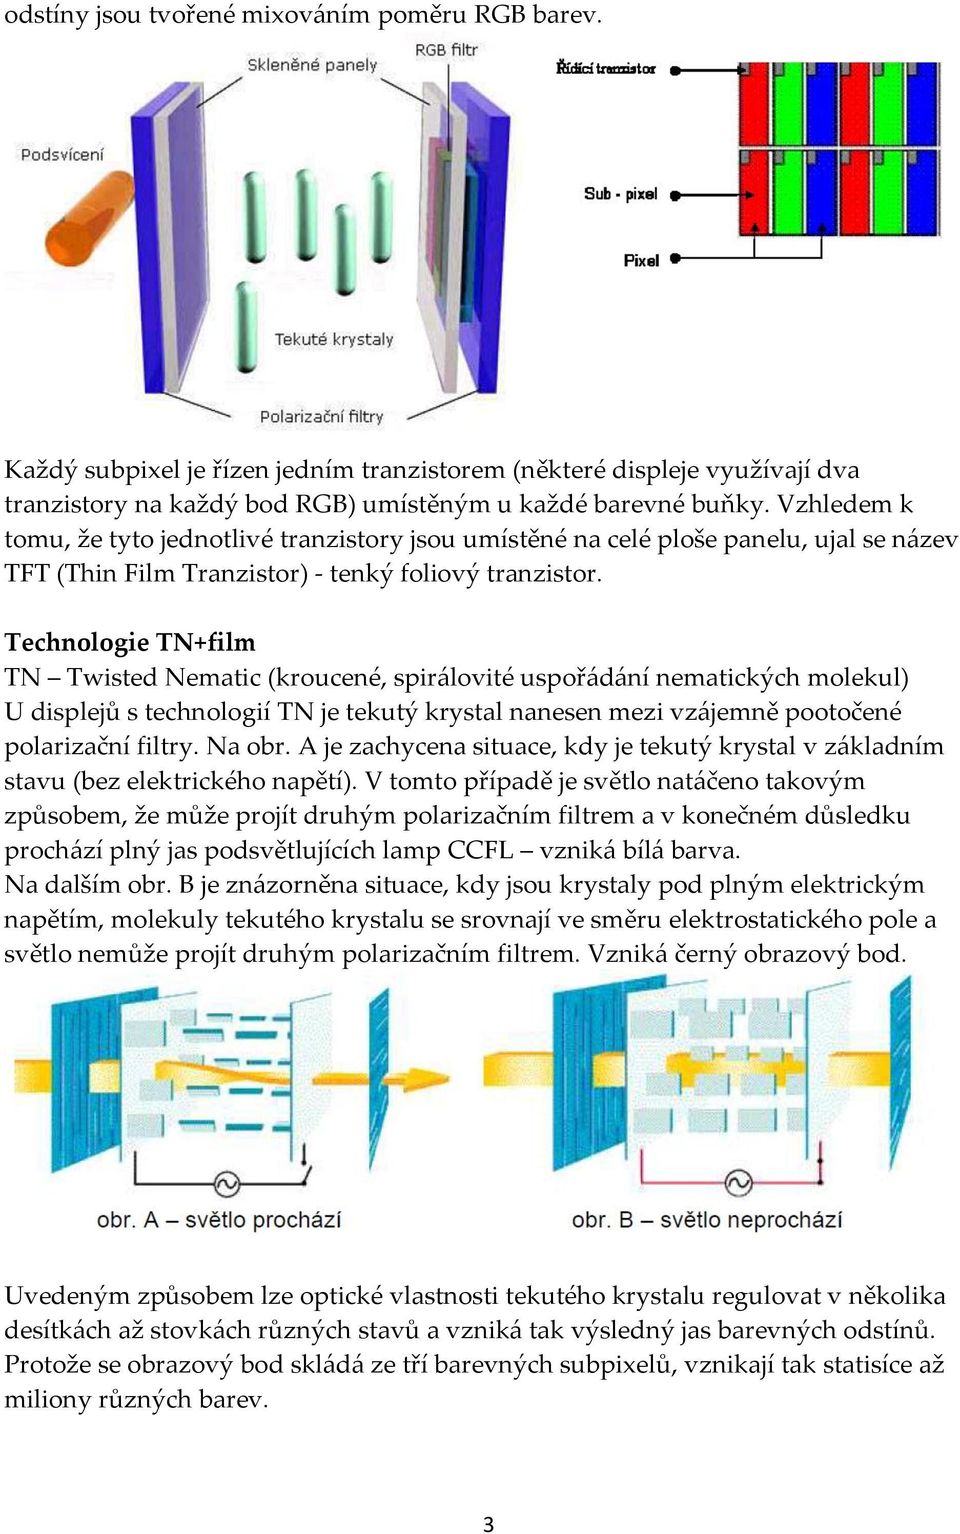 Technologie TN+film TN Twisted Nematic (kroucené, spirálovité uspořádání nematických molekul) U displejů s technologií TN je tekutý krystal nanesen mezi vzájemně pootočené polarizační filtry. Na obr.